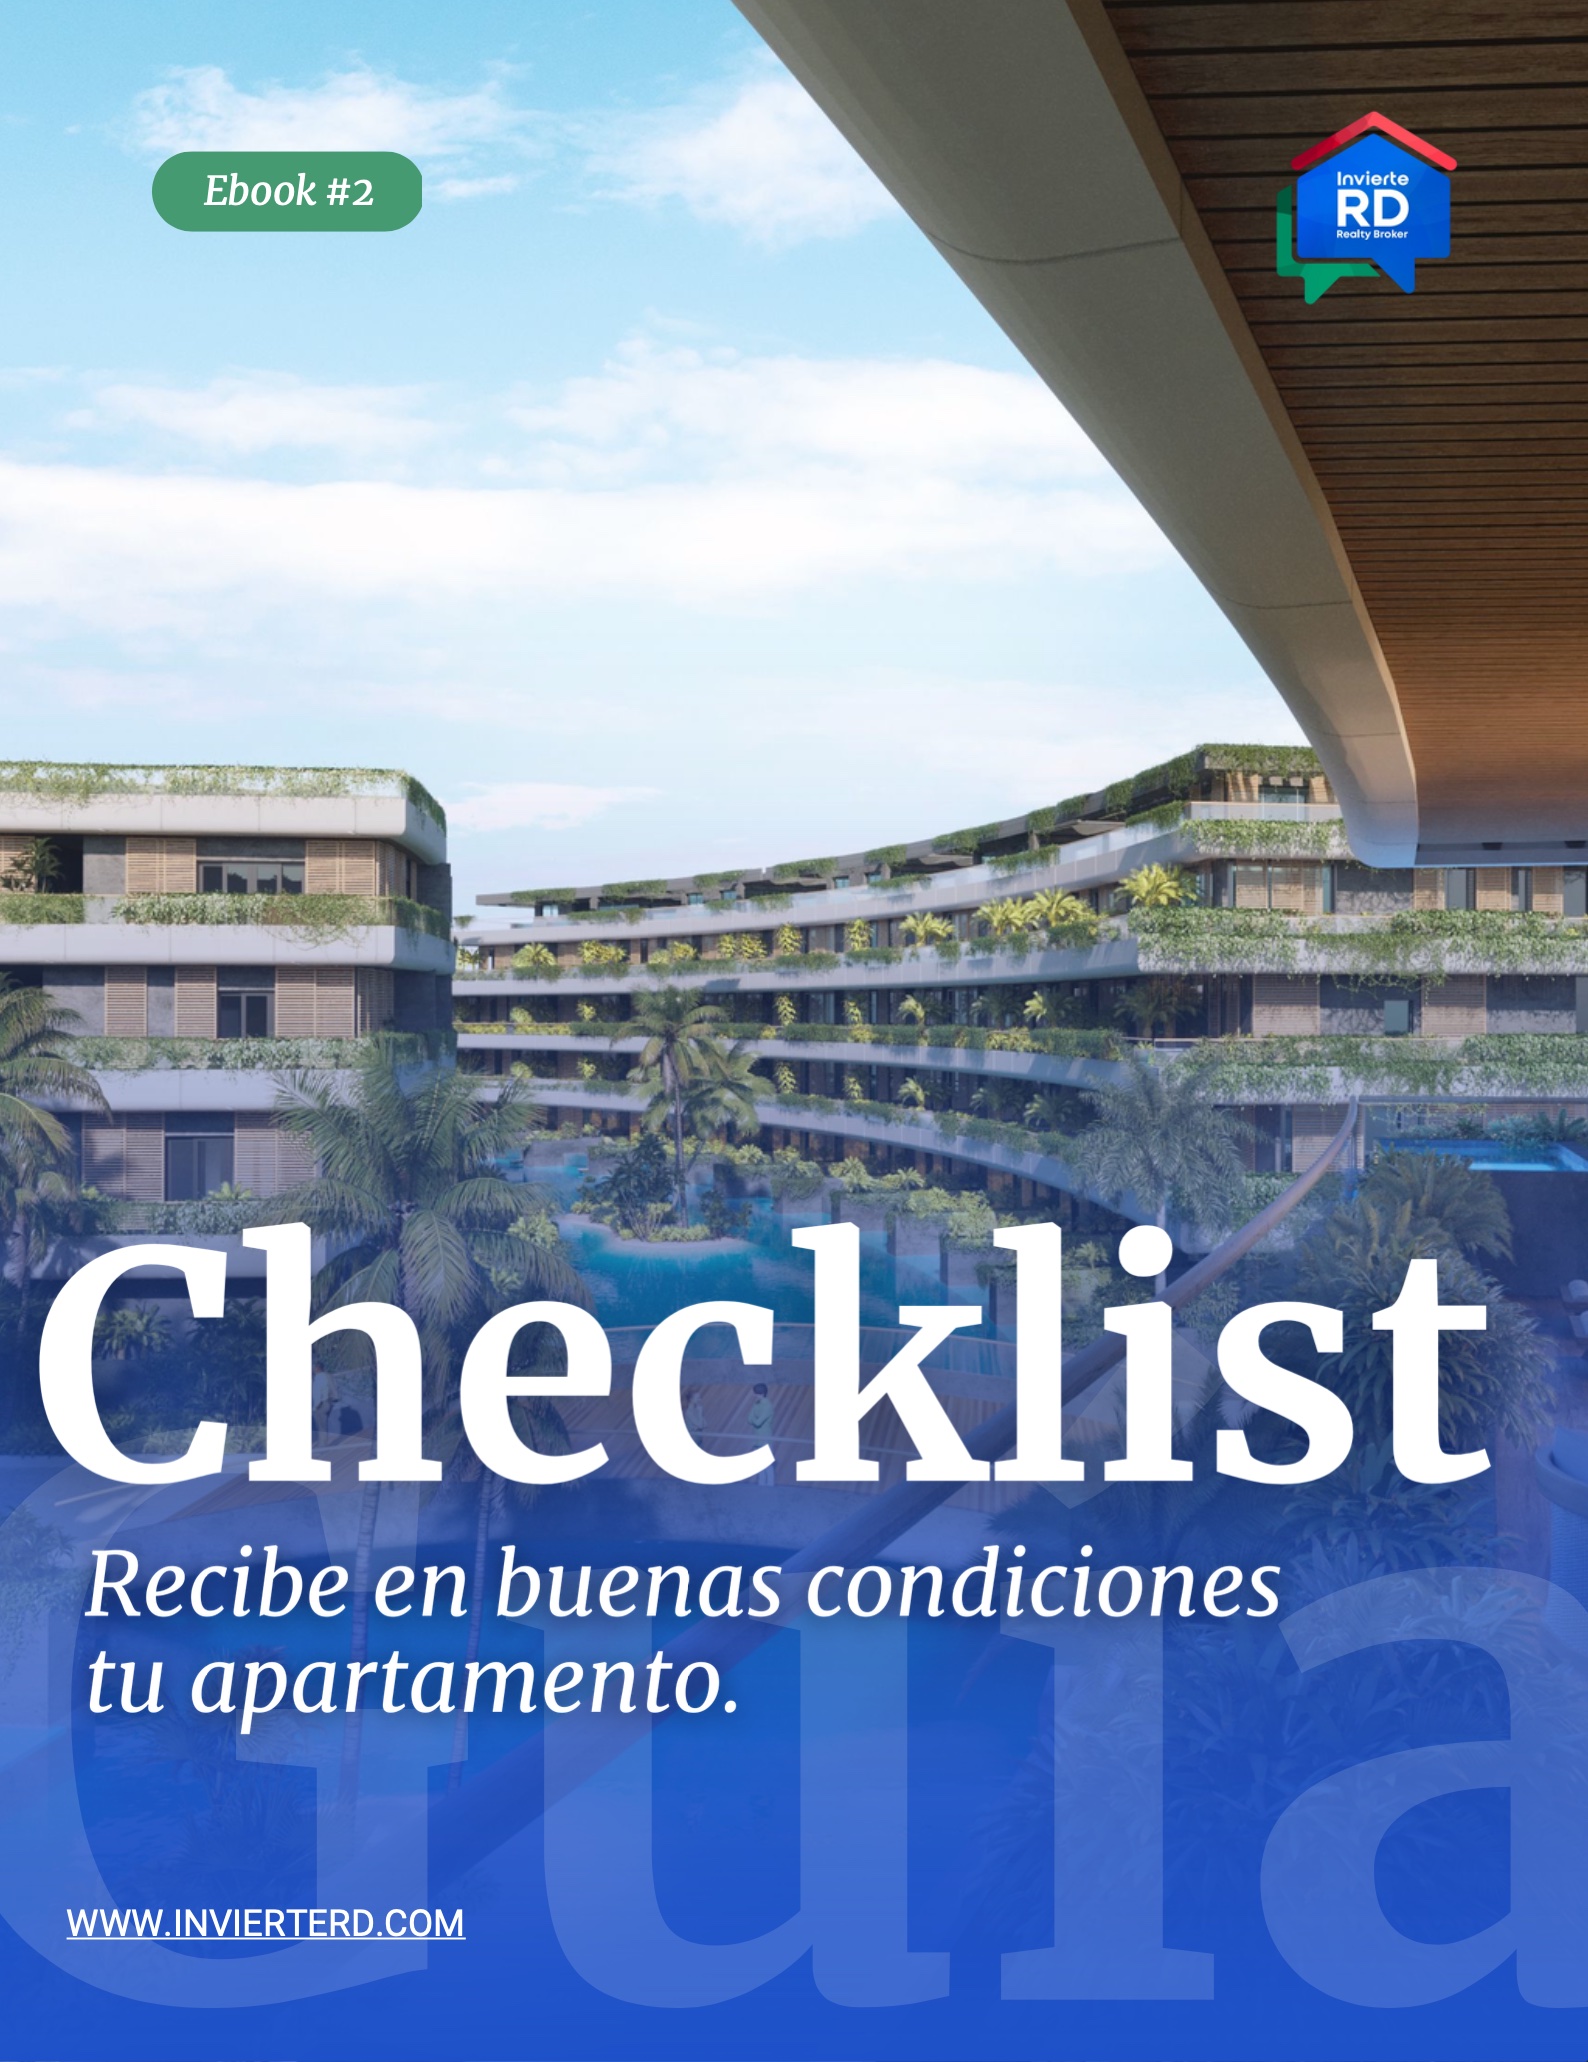 Cómo recibir un apartamento nuevo? Checklist